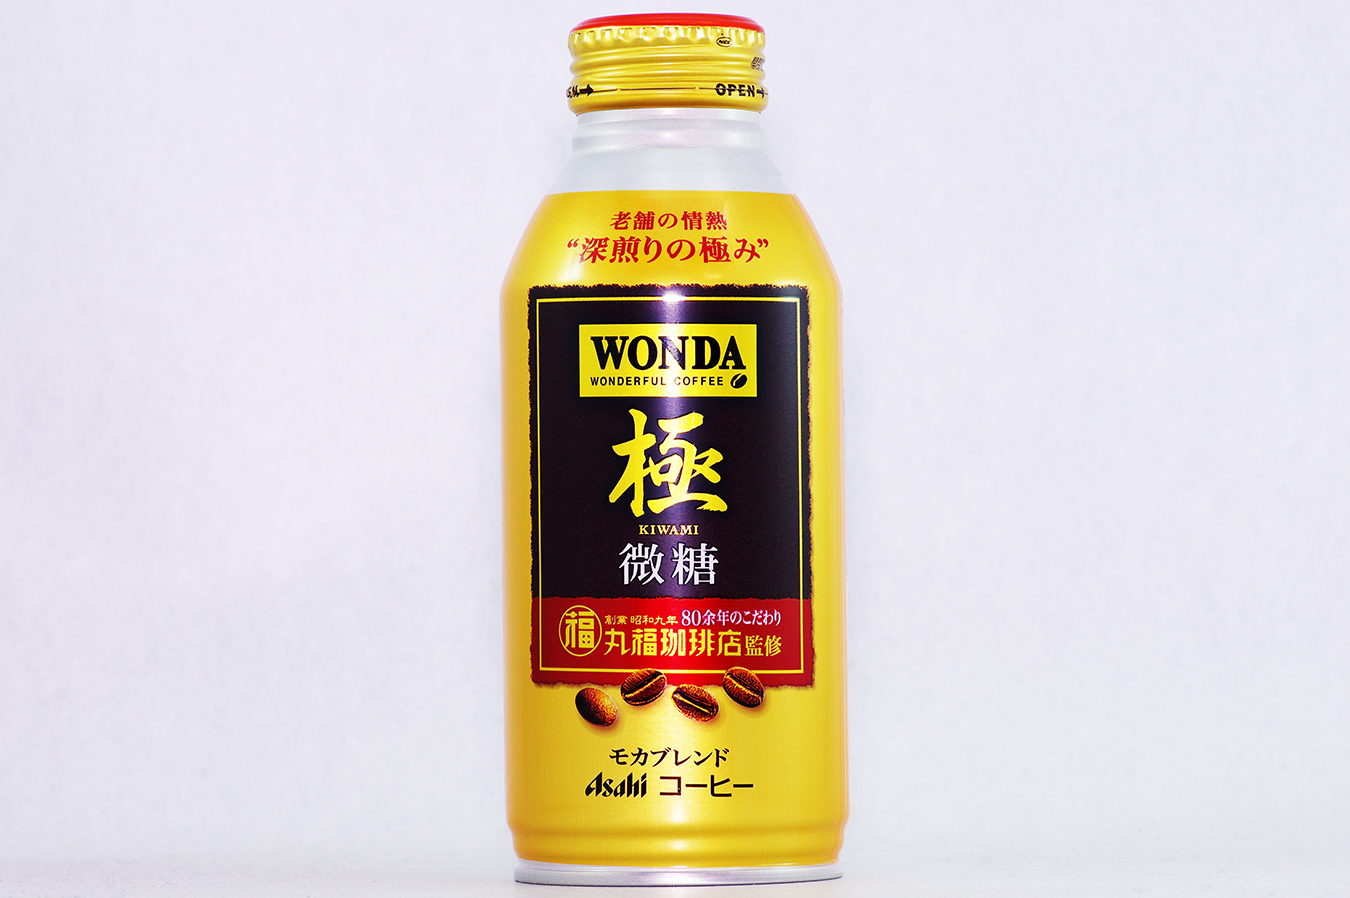 WONDA 極 微糖 ボトル缶370g 2017年3月